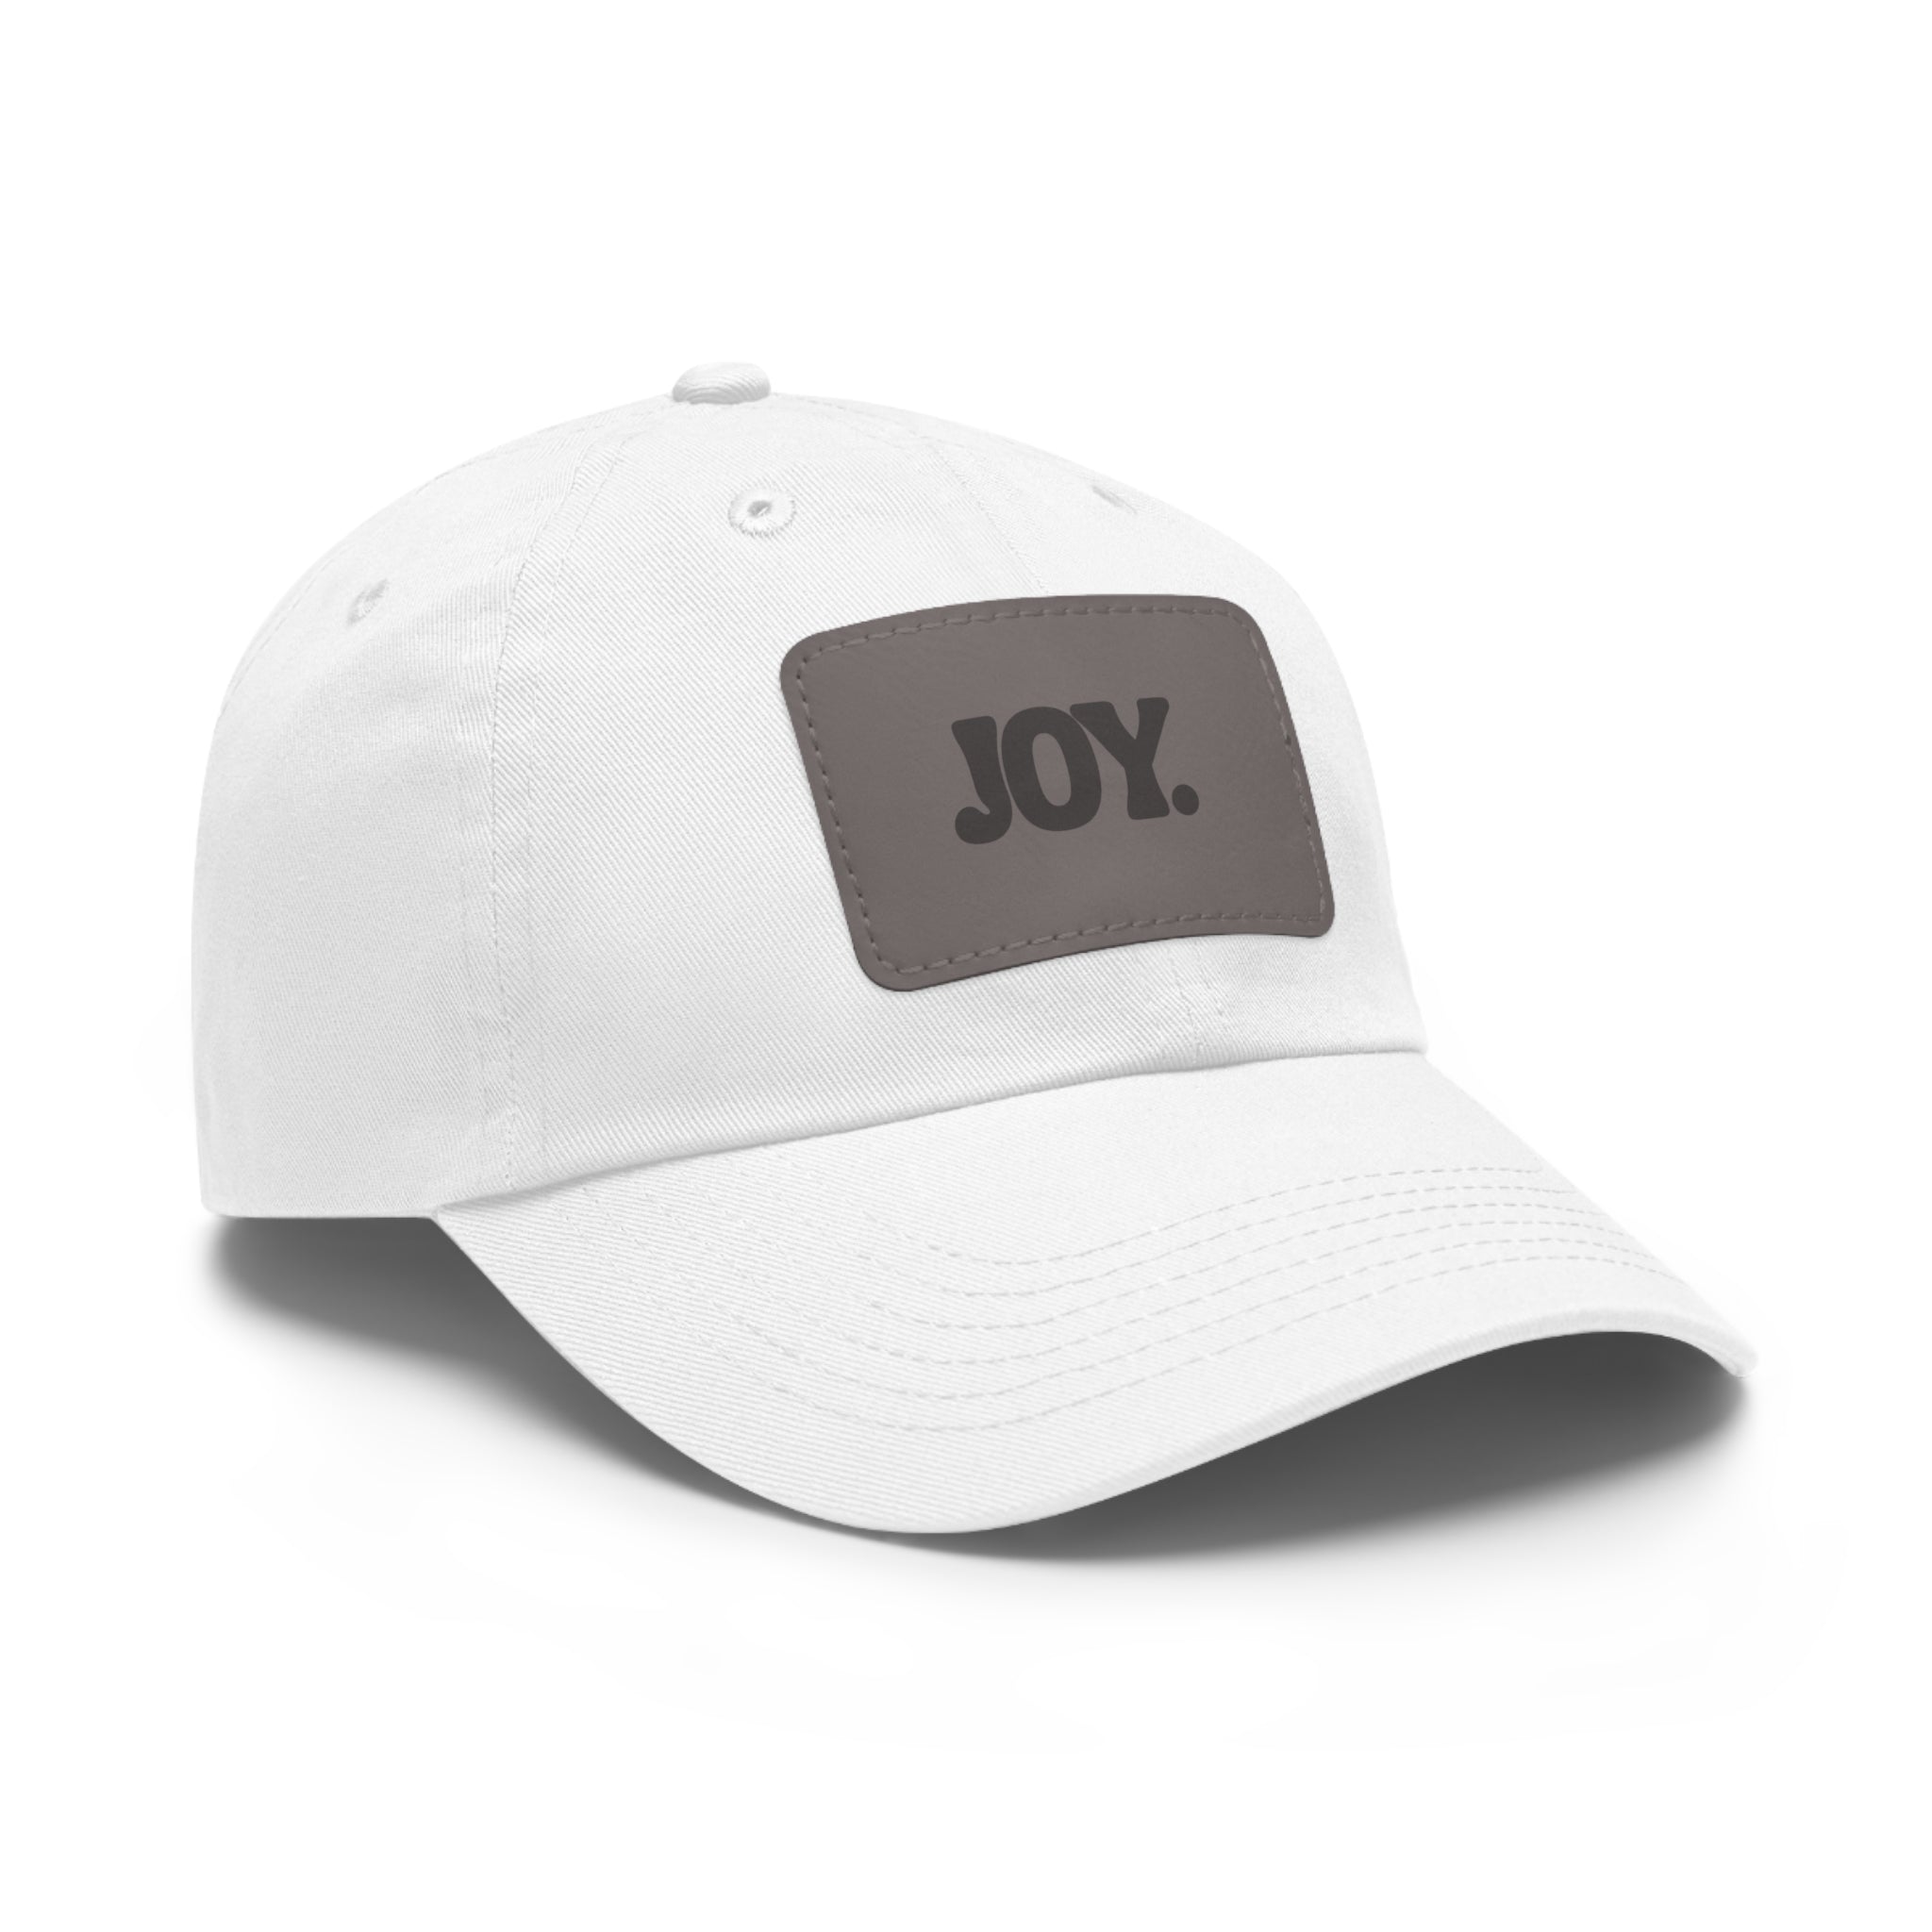 JOY. Dad Hat